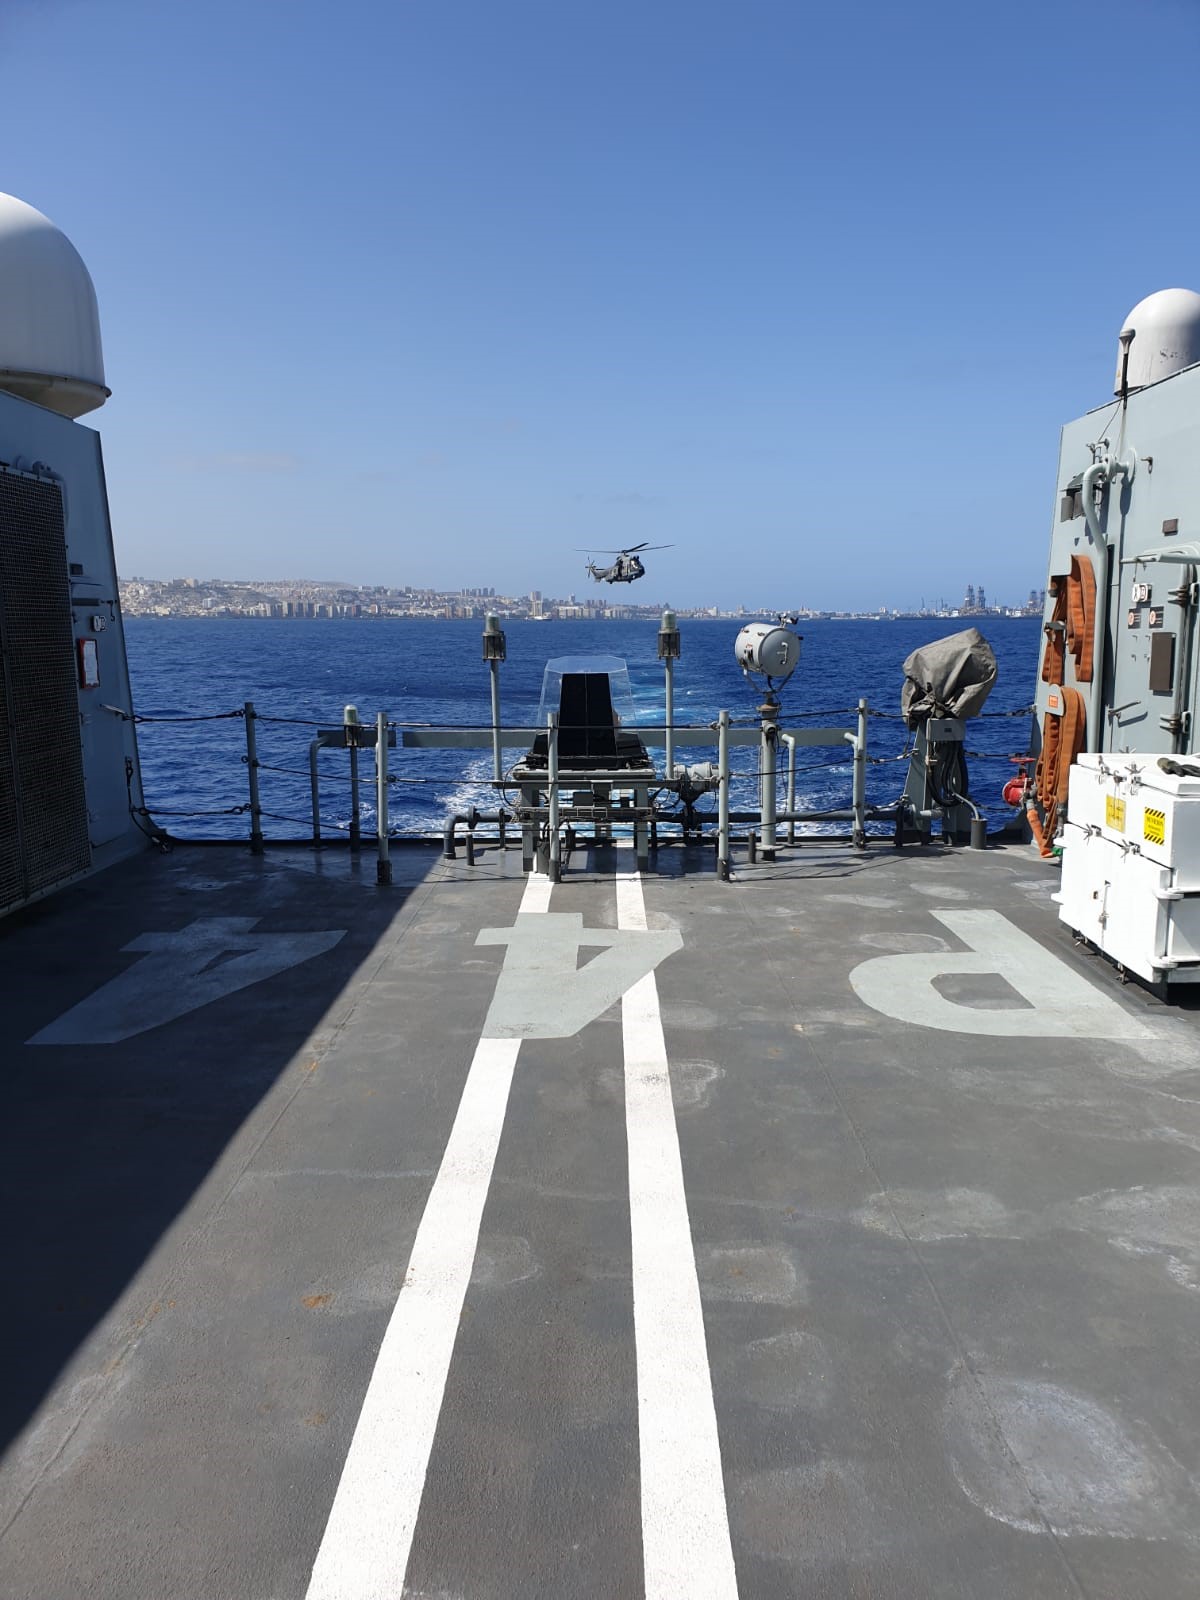 Ejercicios de Colaboración del buque de acción marítima tornado con helicópteros del Ejército del Aire